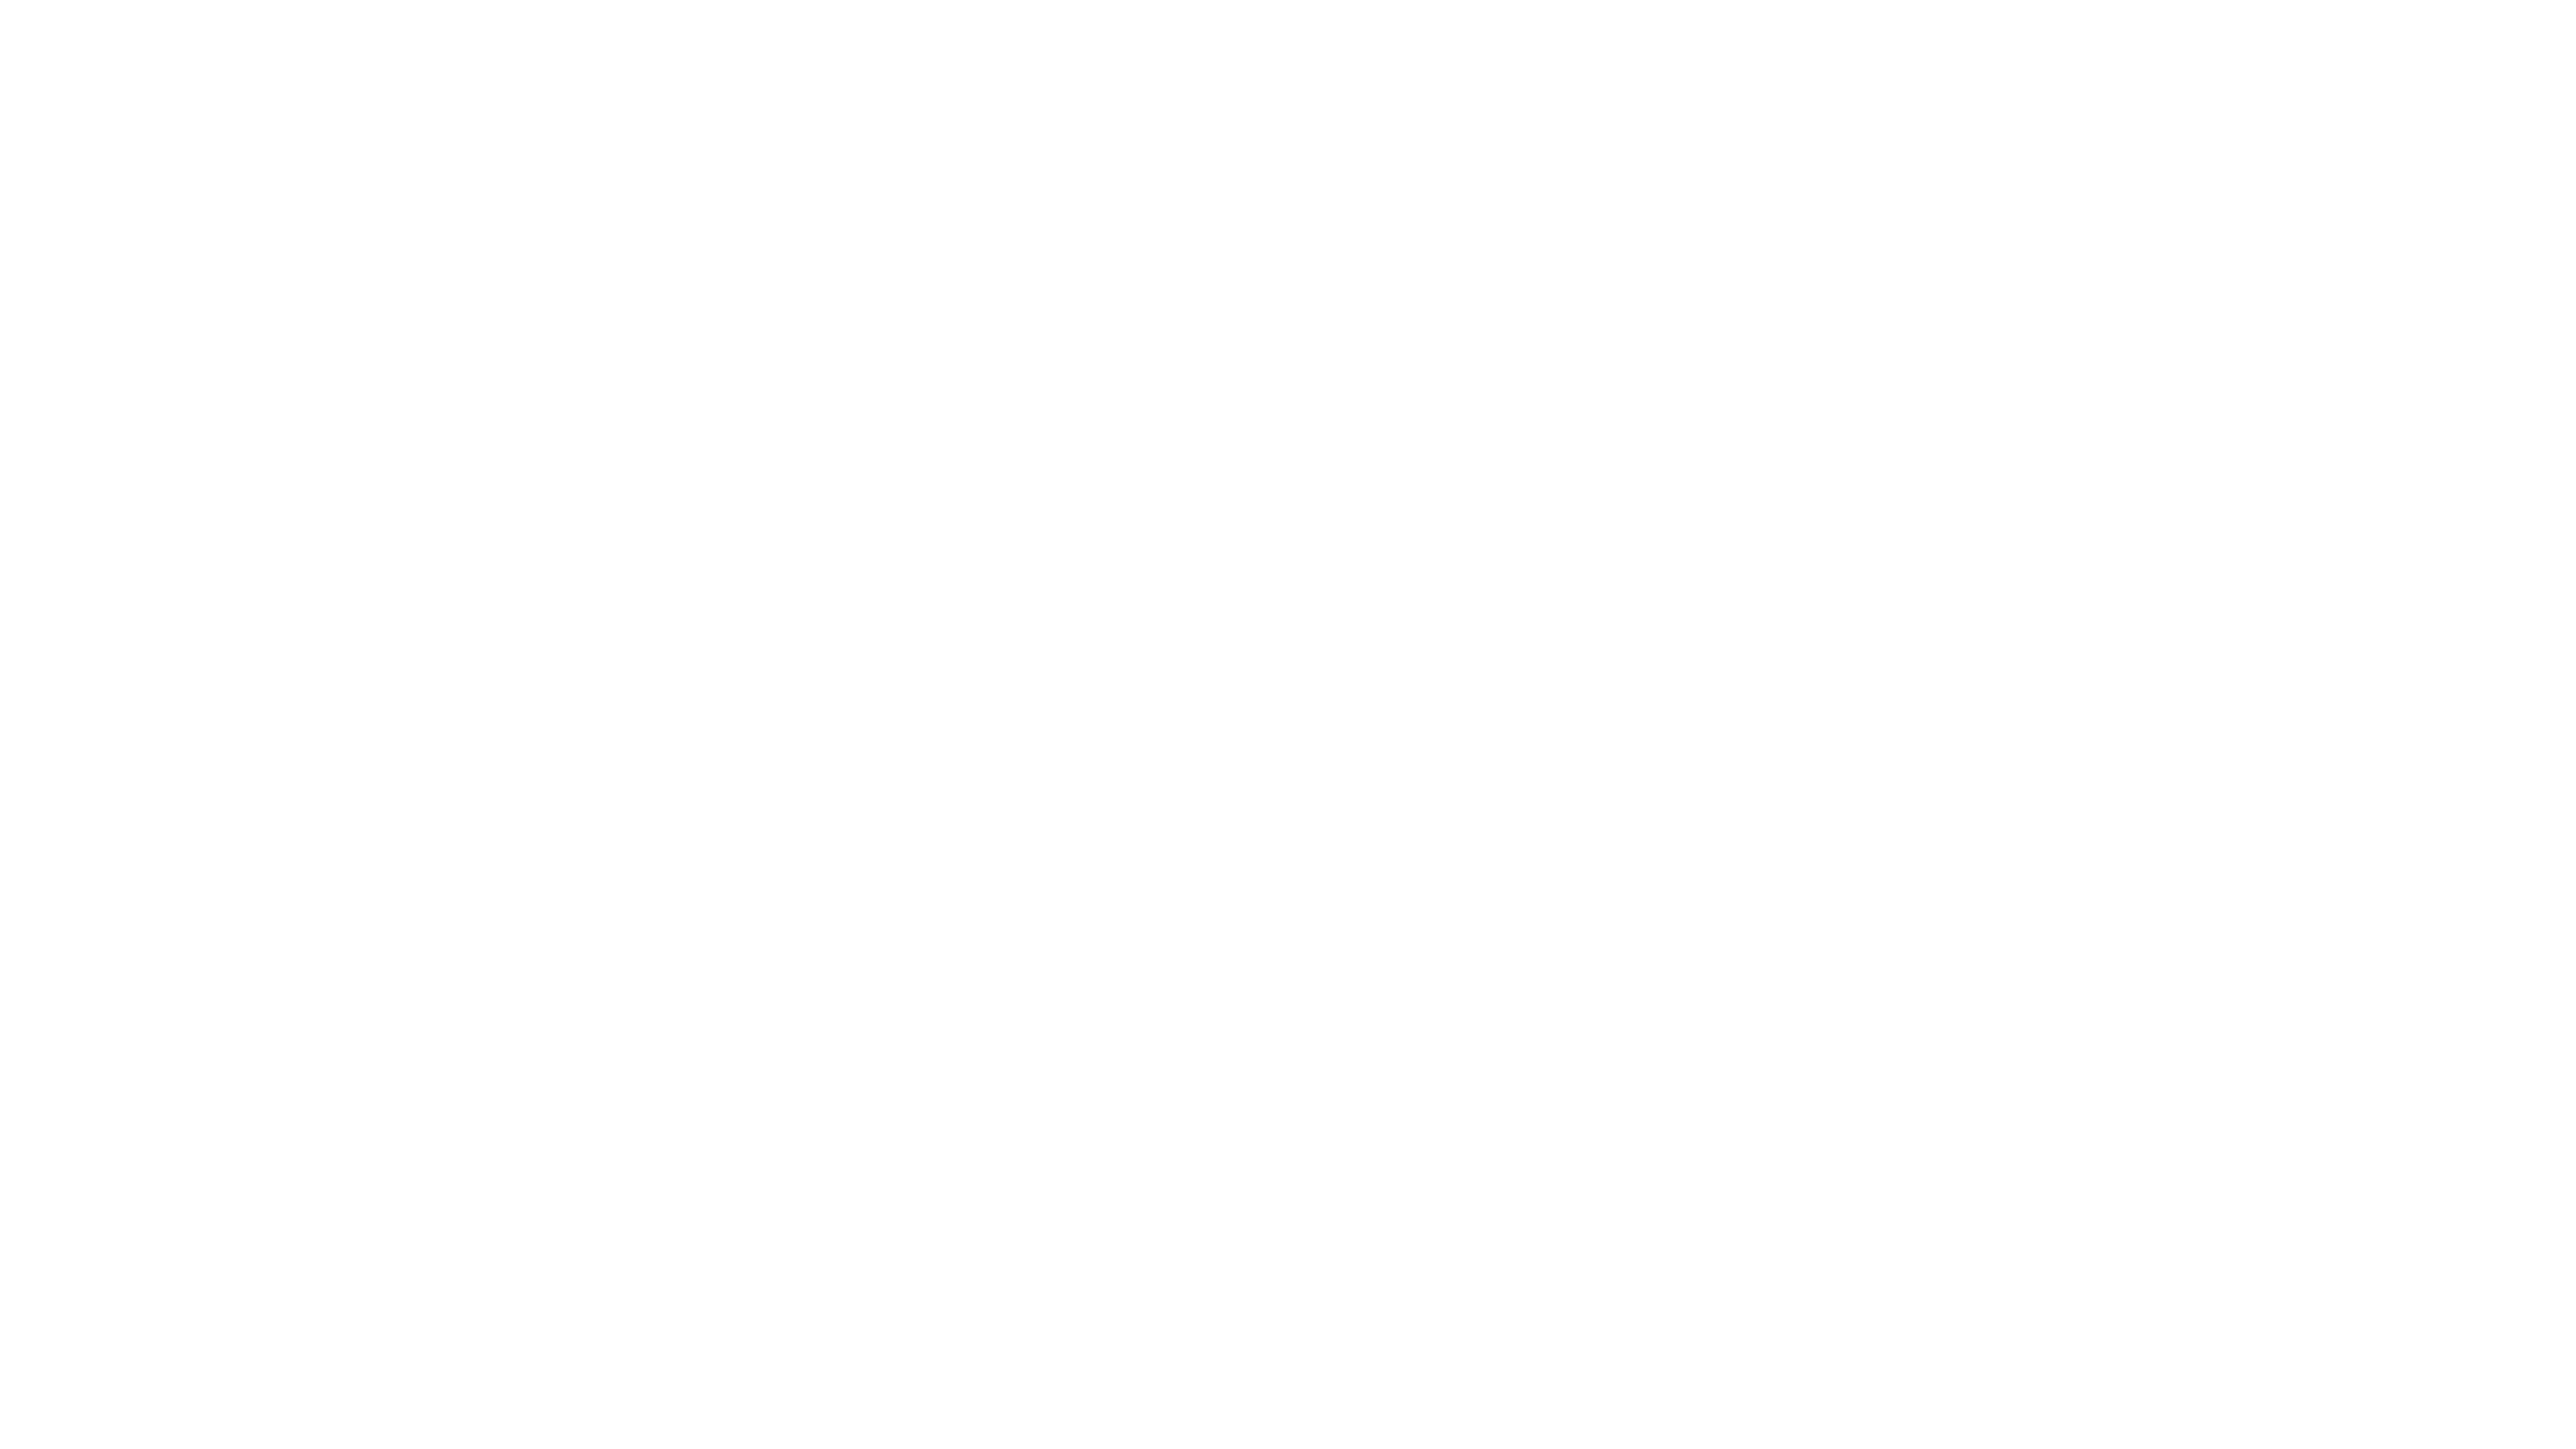 地图标记了2022年11月加息的央行。